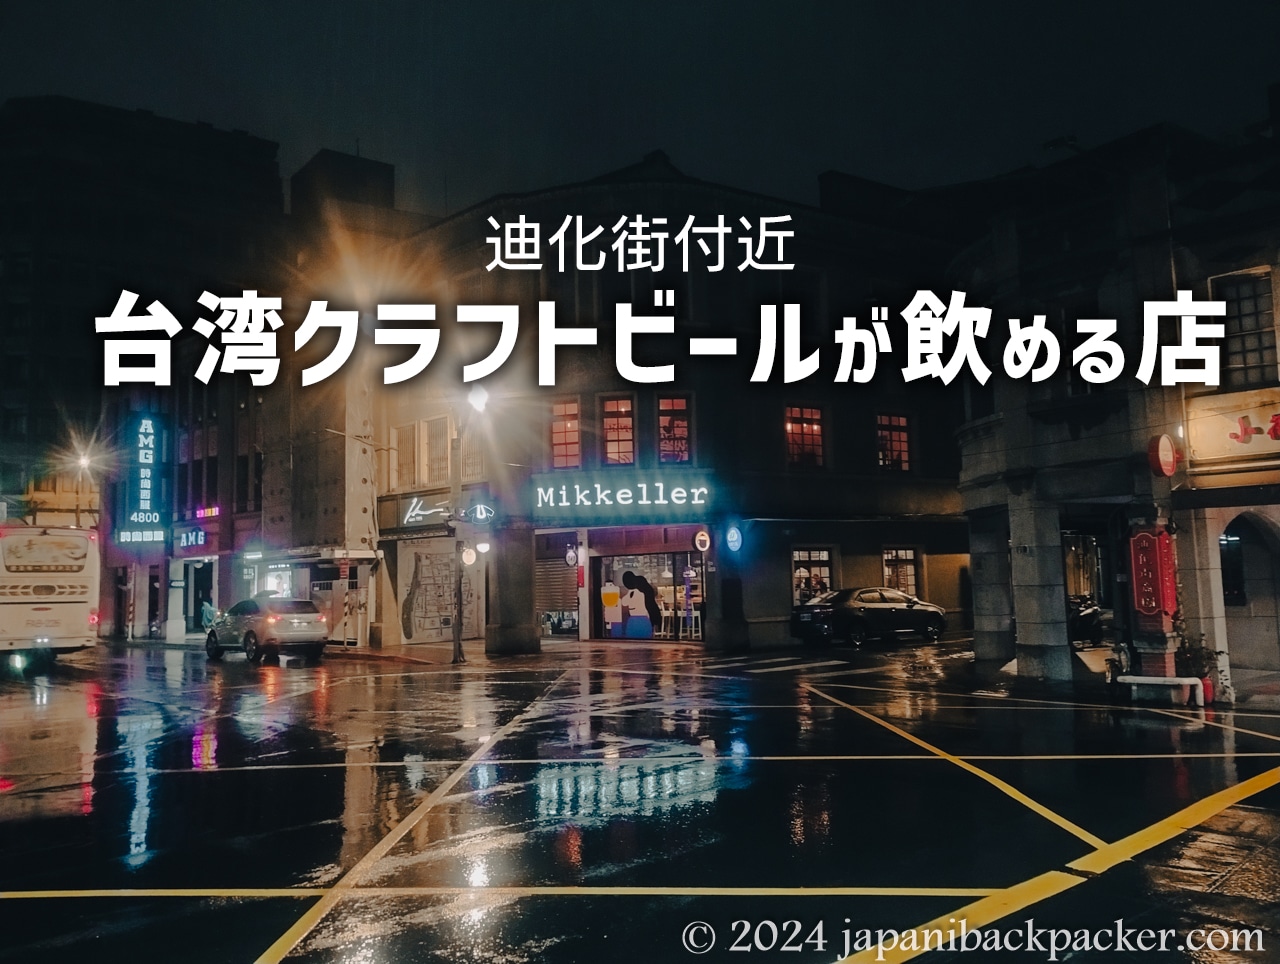 台湾クラフトビールが飲める店タイトル画像